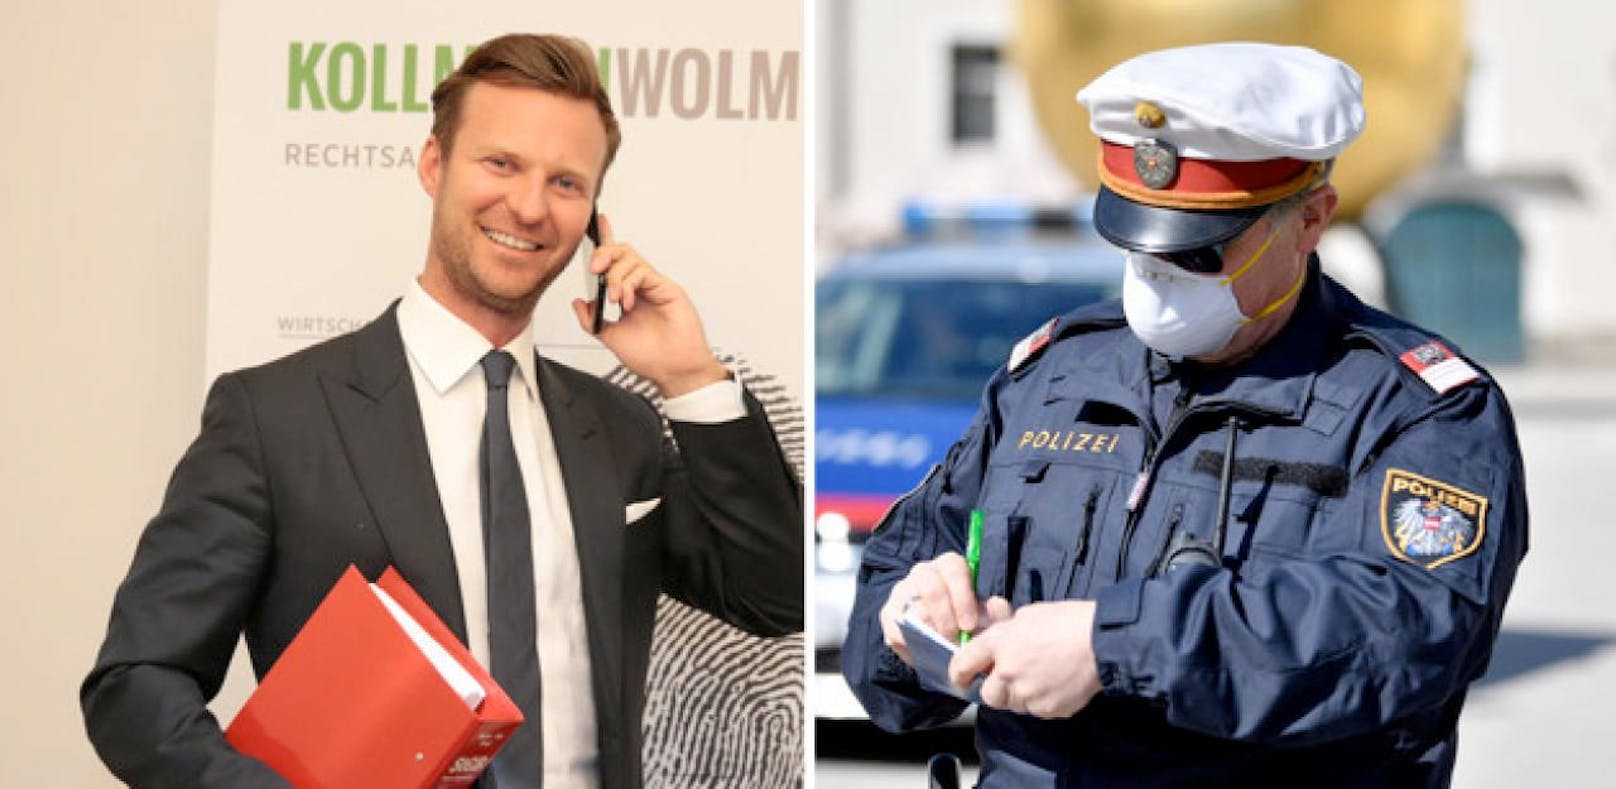 Der Wiener Star-Anwalt Philipp Wolm erklärt, wann die Polizei grundsätzliche anzeigen kann  und wann nicht.